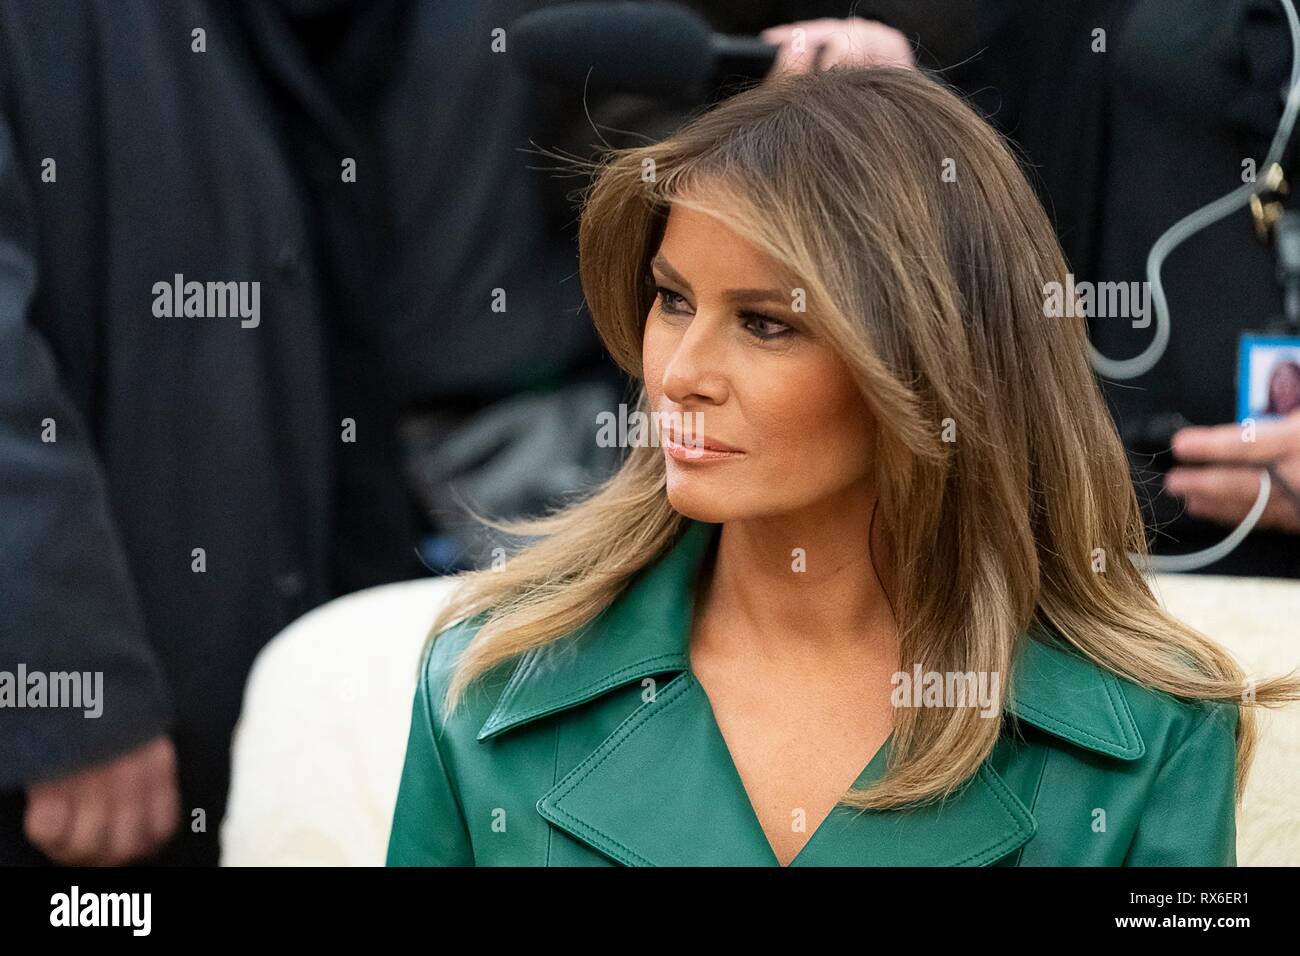 La Primera Dama de EE.UU. Melania Trump, vistiendo una piel verde doble botonadura abrigo vestido durante una reunión bilateral entre el Presidente Donald Trump y Primer Ministro checo Andrej Babis en la Oficina Oval de la Casa Blanca el 7 de marzo de 2019 en Washington, DC. Foto de stock